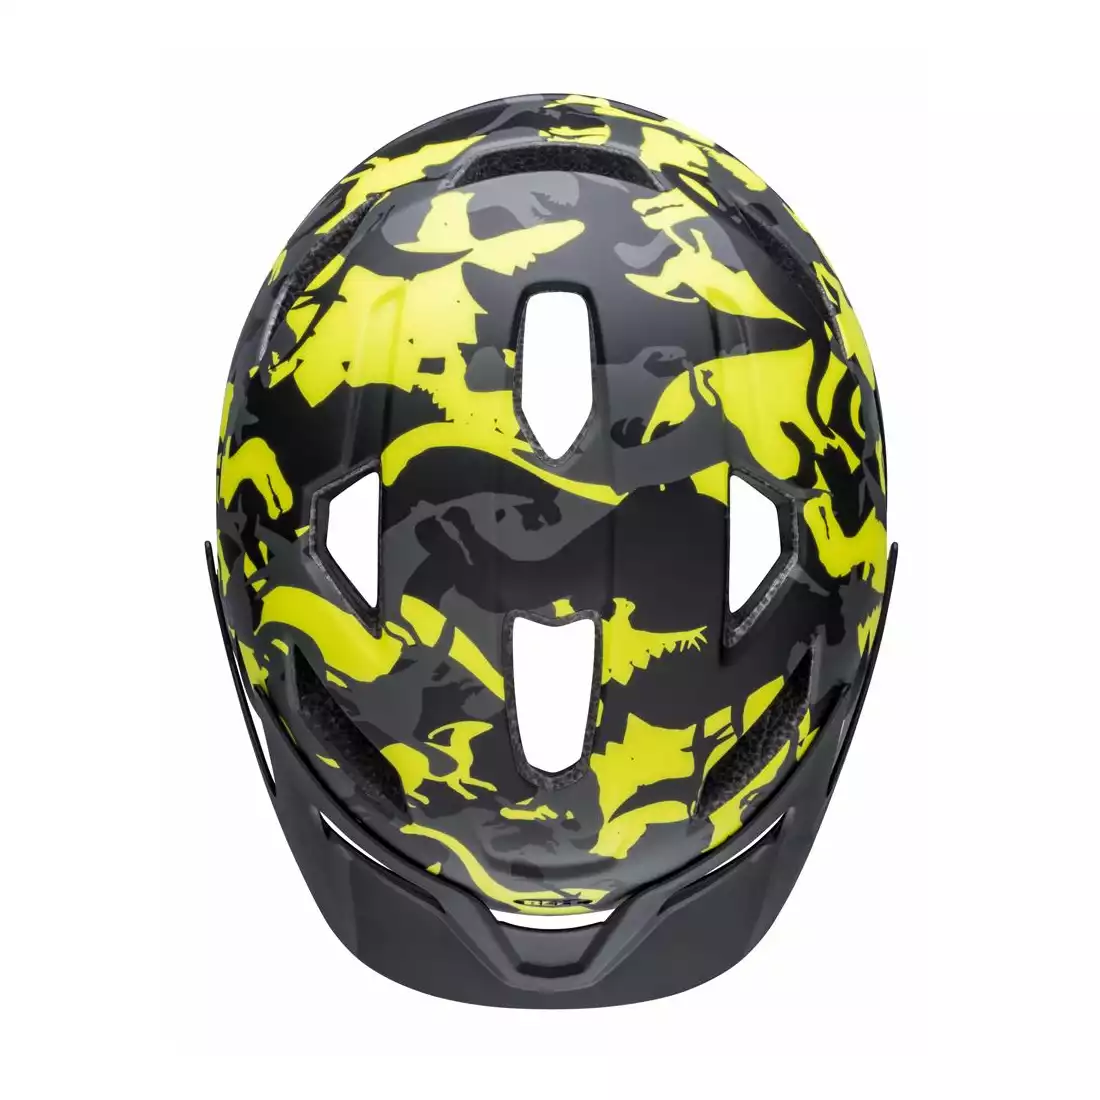 BELL SIDETRACK Children's bicycle helmet, black-yellow